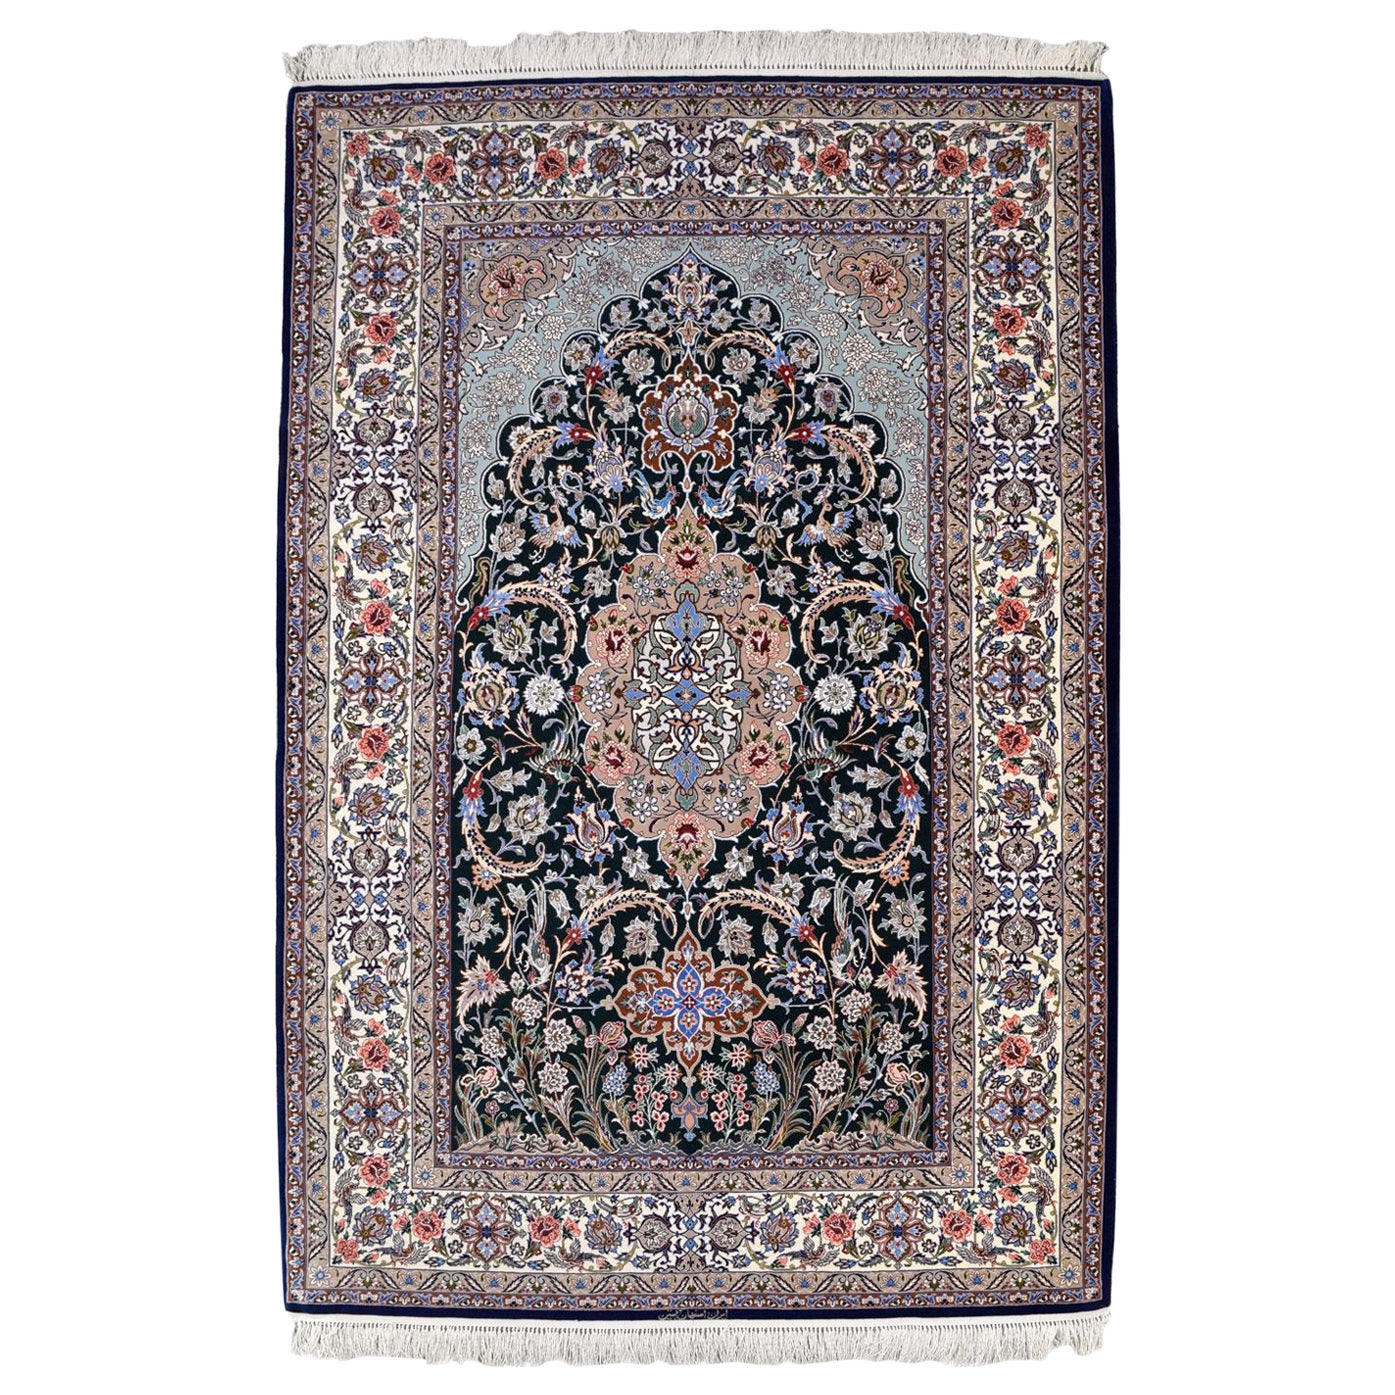 Tapis persan Isfahan, laine et soie bleu, crème et rouge, 5' x 7'